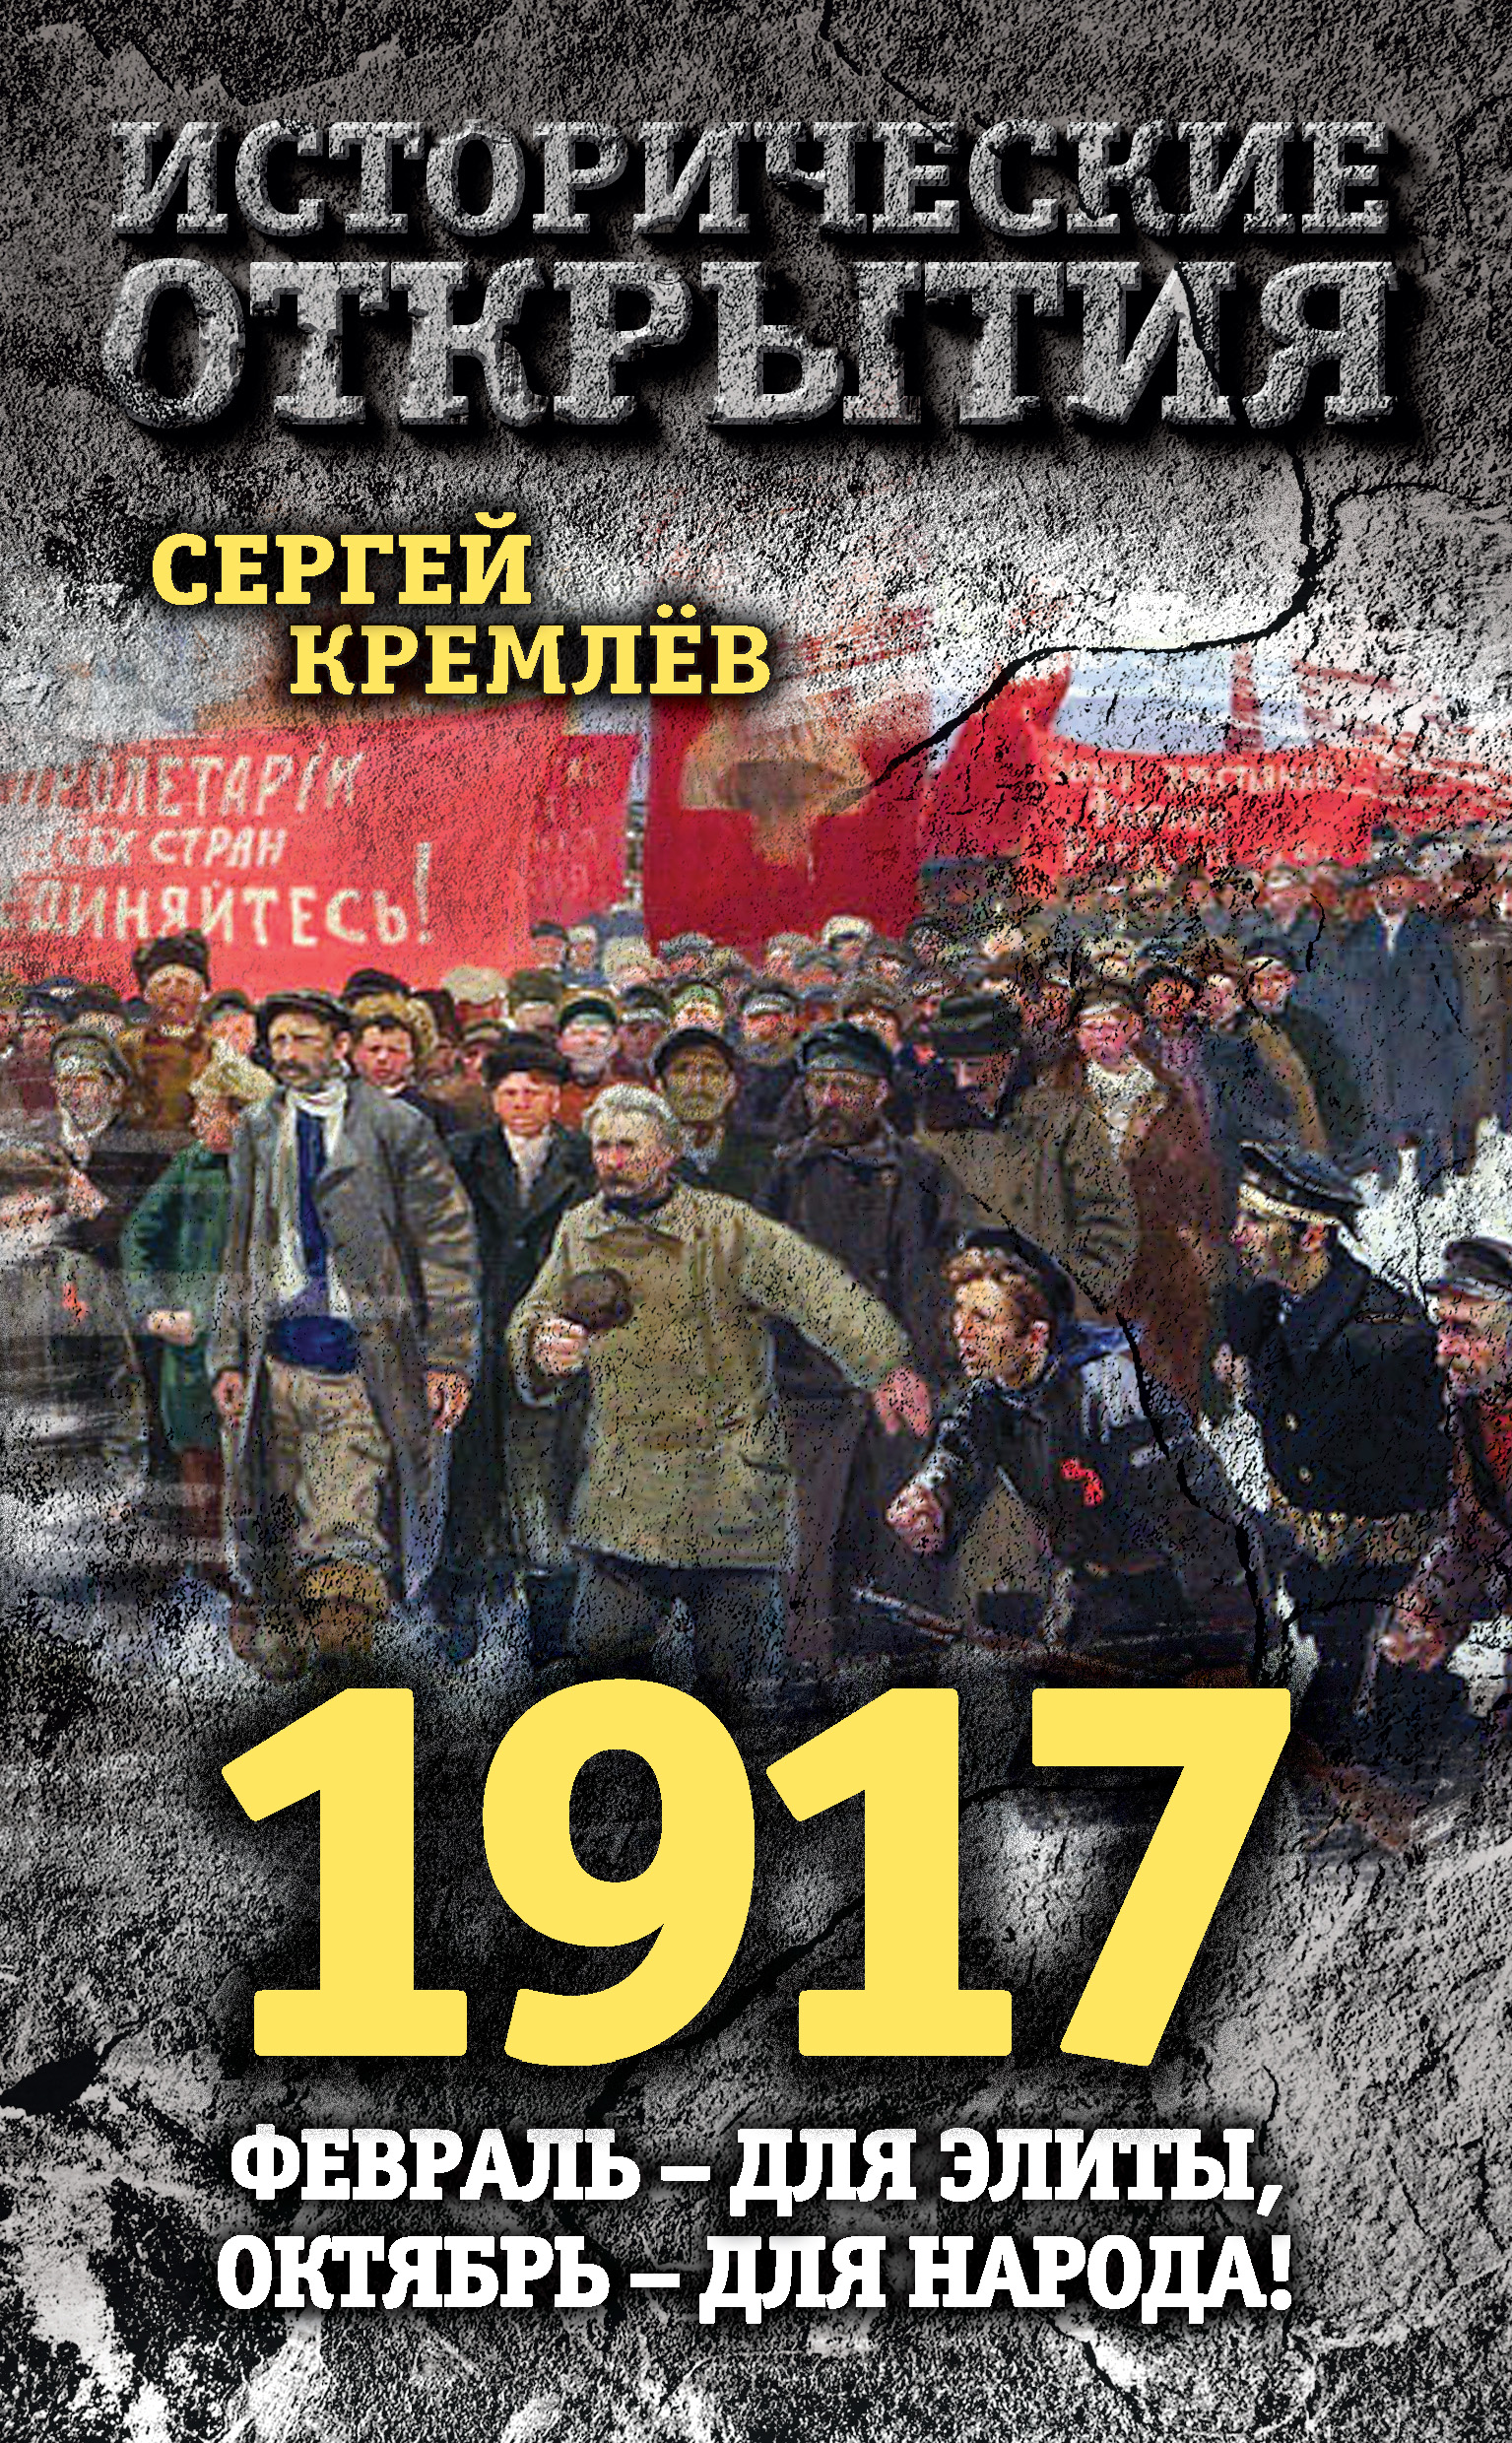 1917.Февраль – для элиты, Октябрь – для народа!